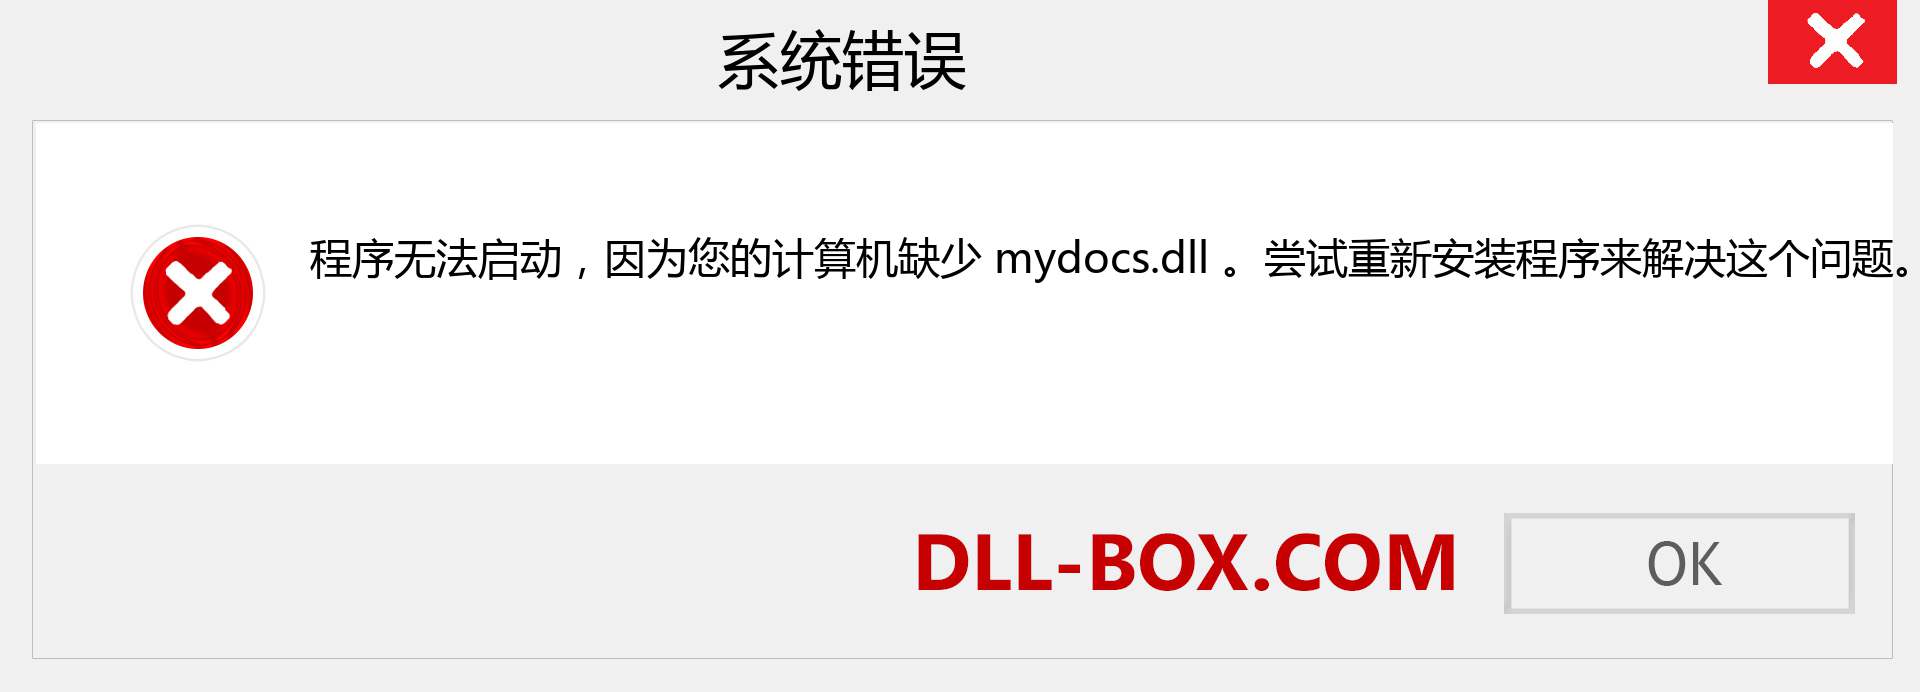 mydocs.dll 文件丢失？。 适用于 Windows 7、8、10 的下载 - 修复 Windows、照片、图像上的 mydocs dll 丢失错误